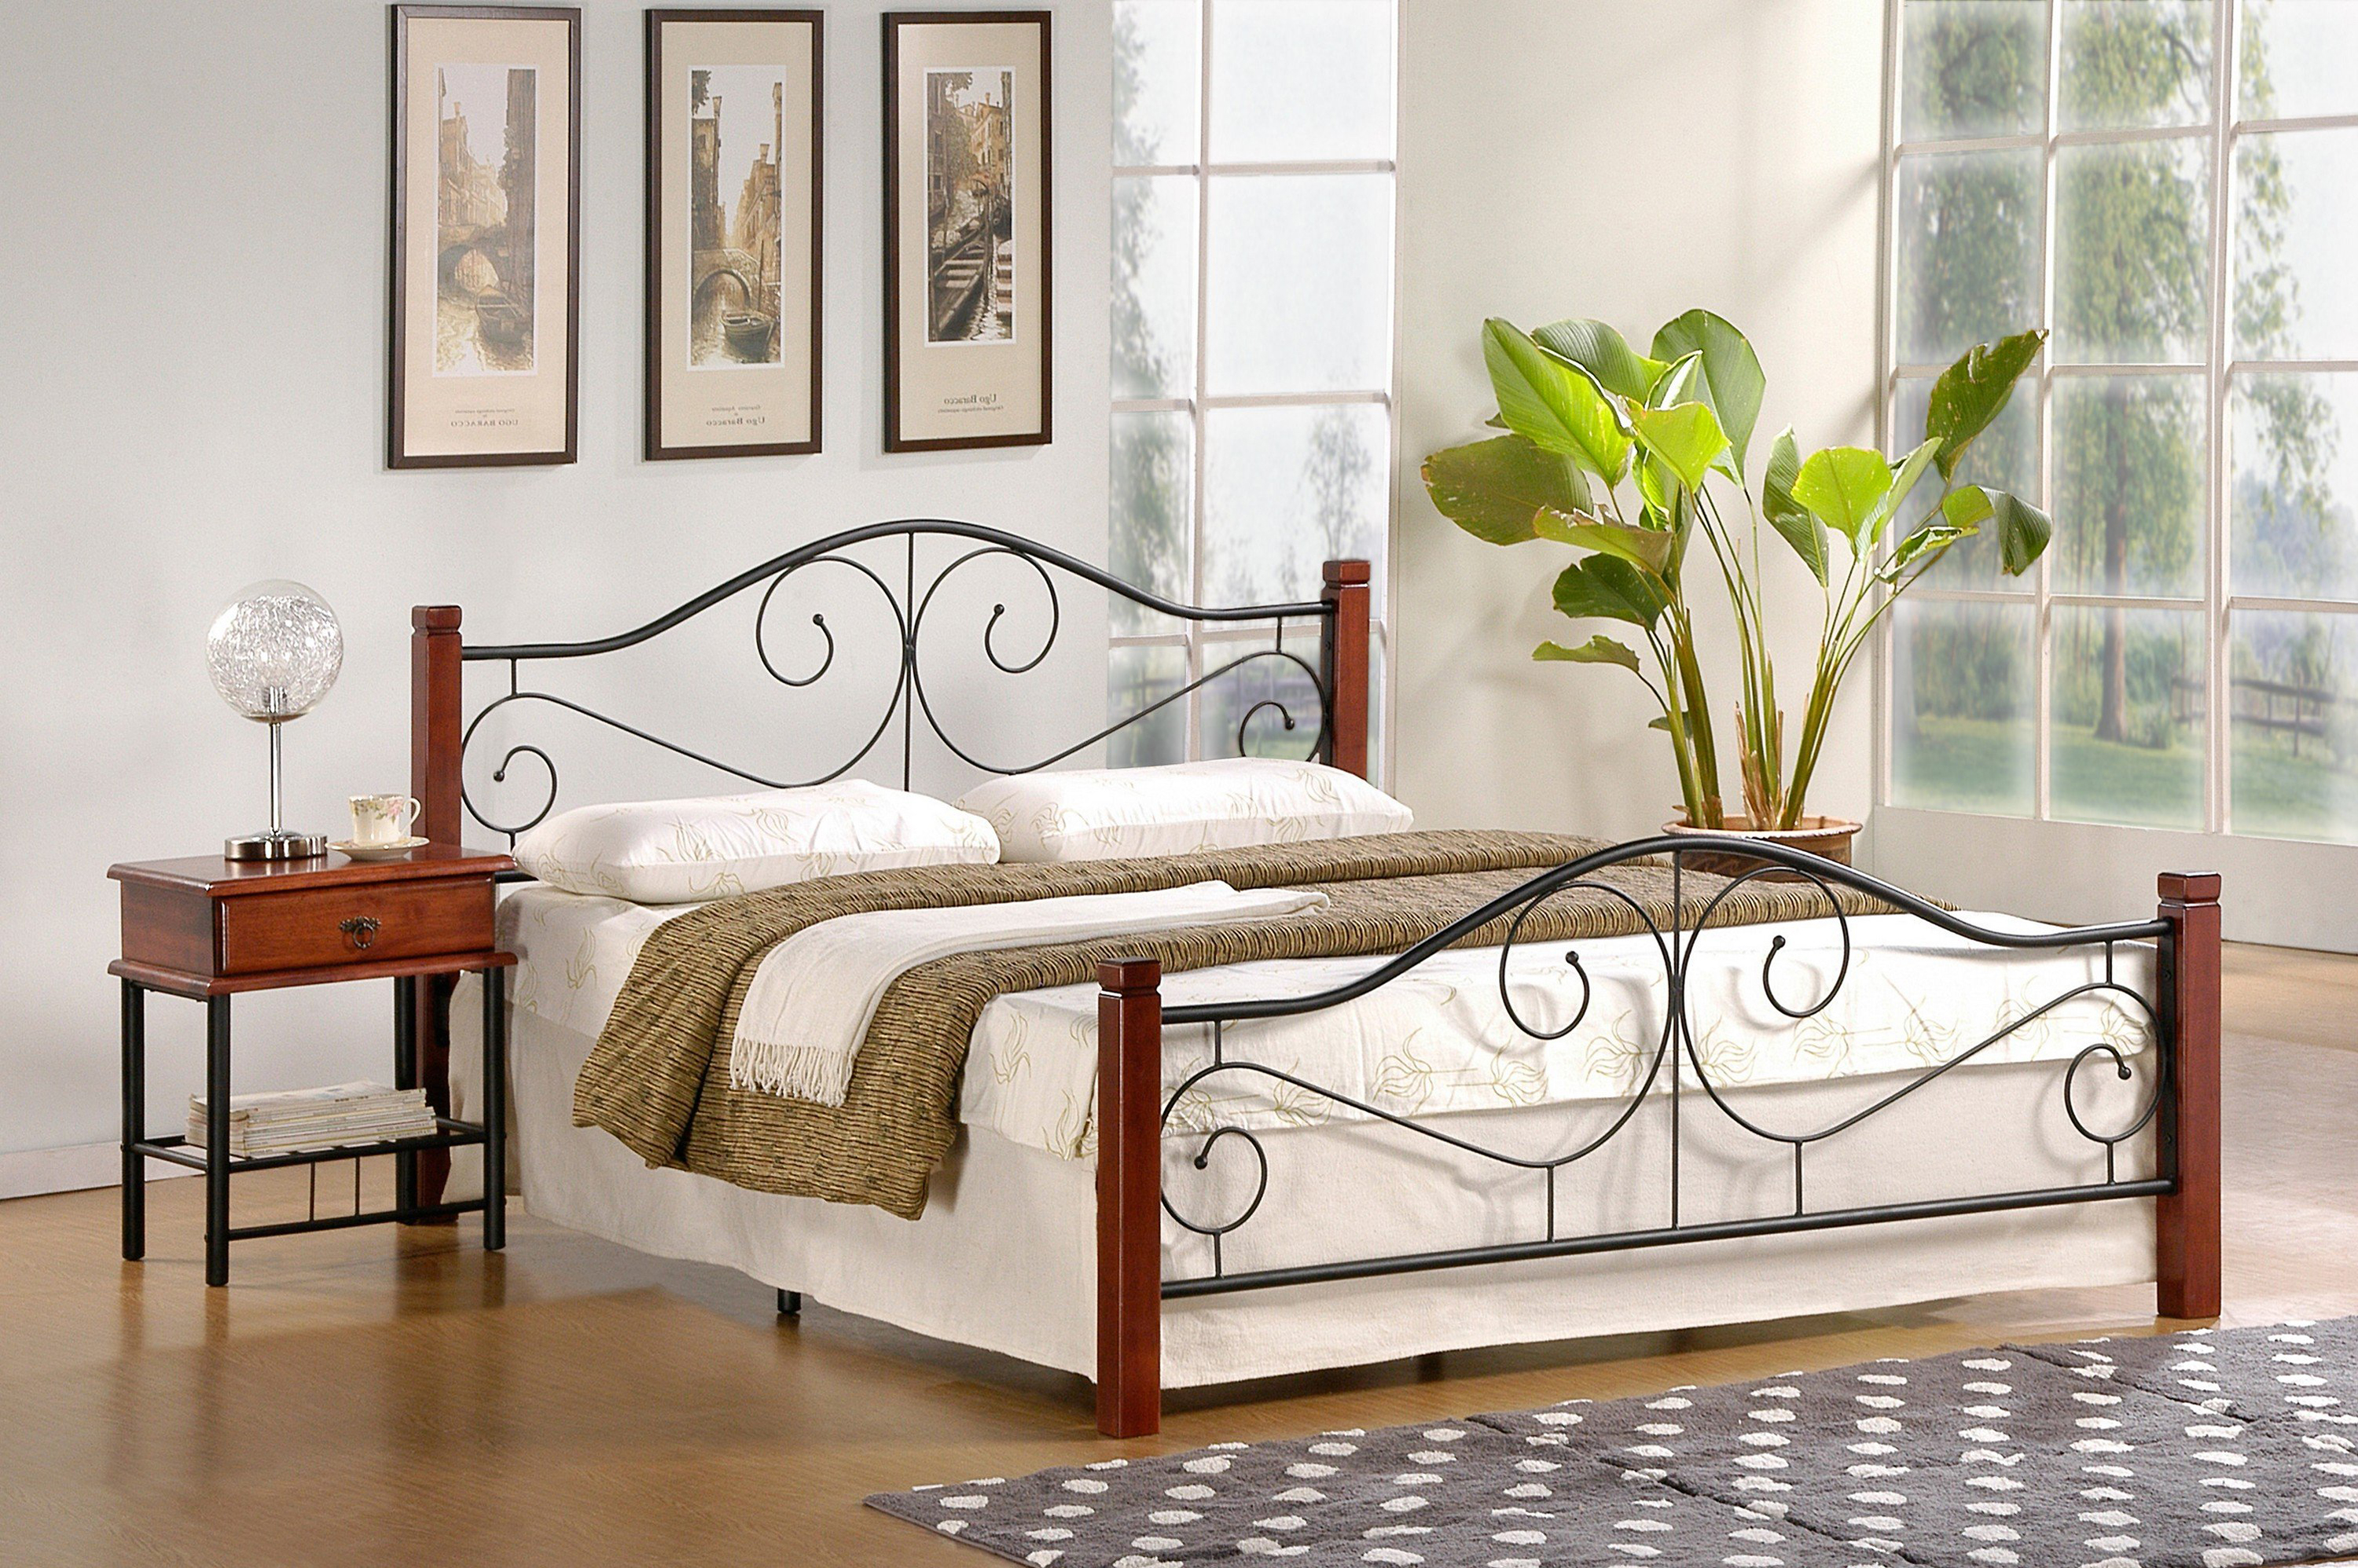 Łóżko Violetta 160x200 - czereśnia antyczna / czarny łóżko w stylu klasycznym